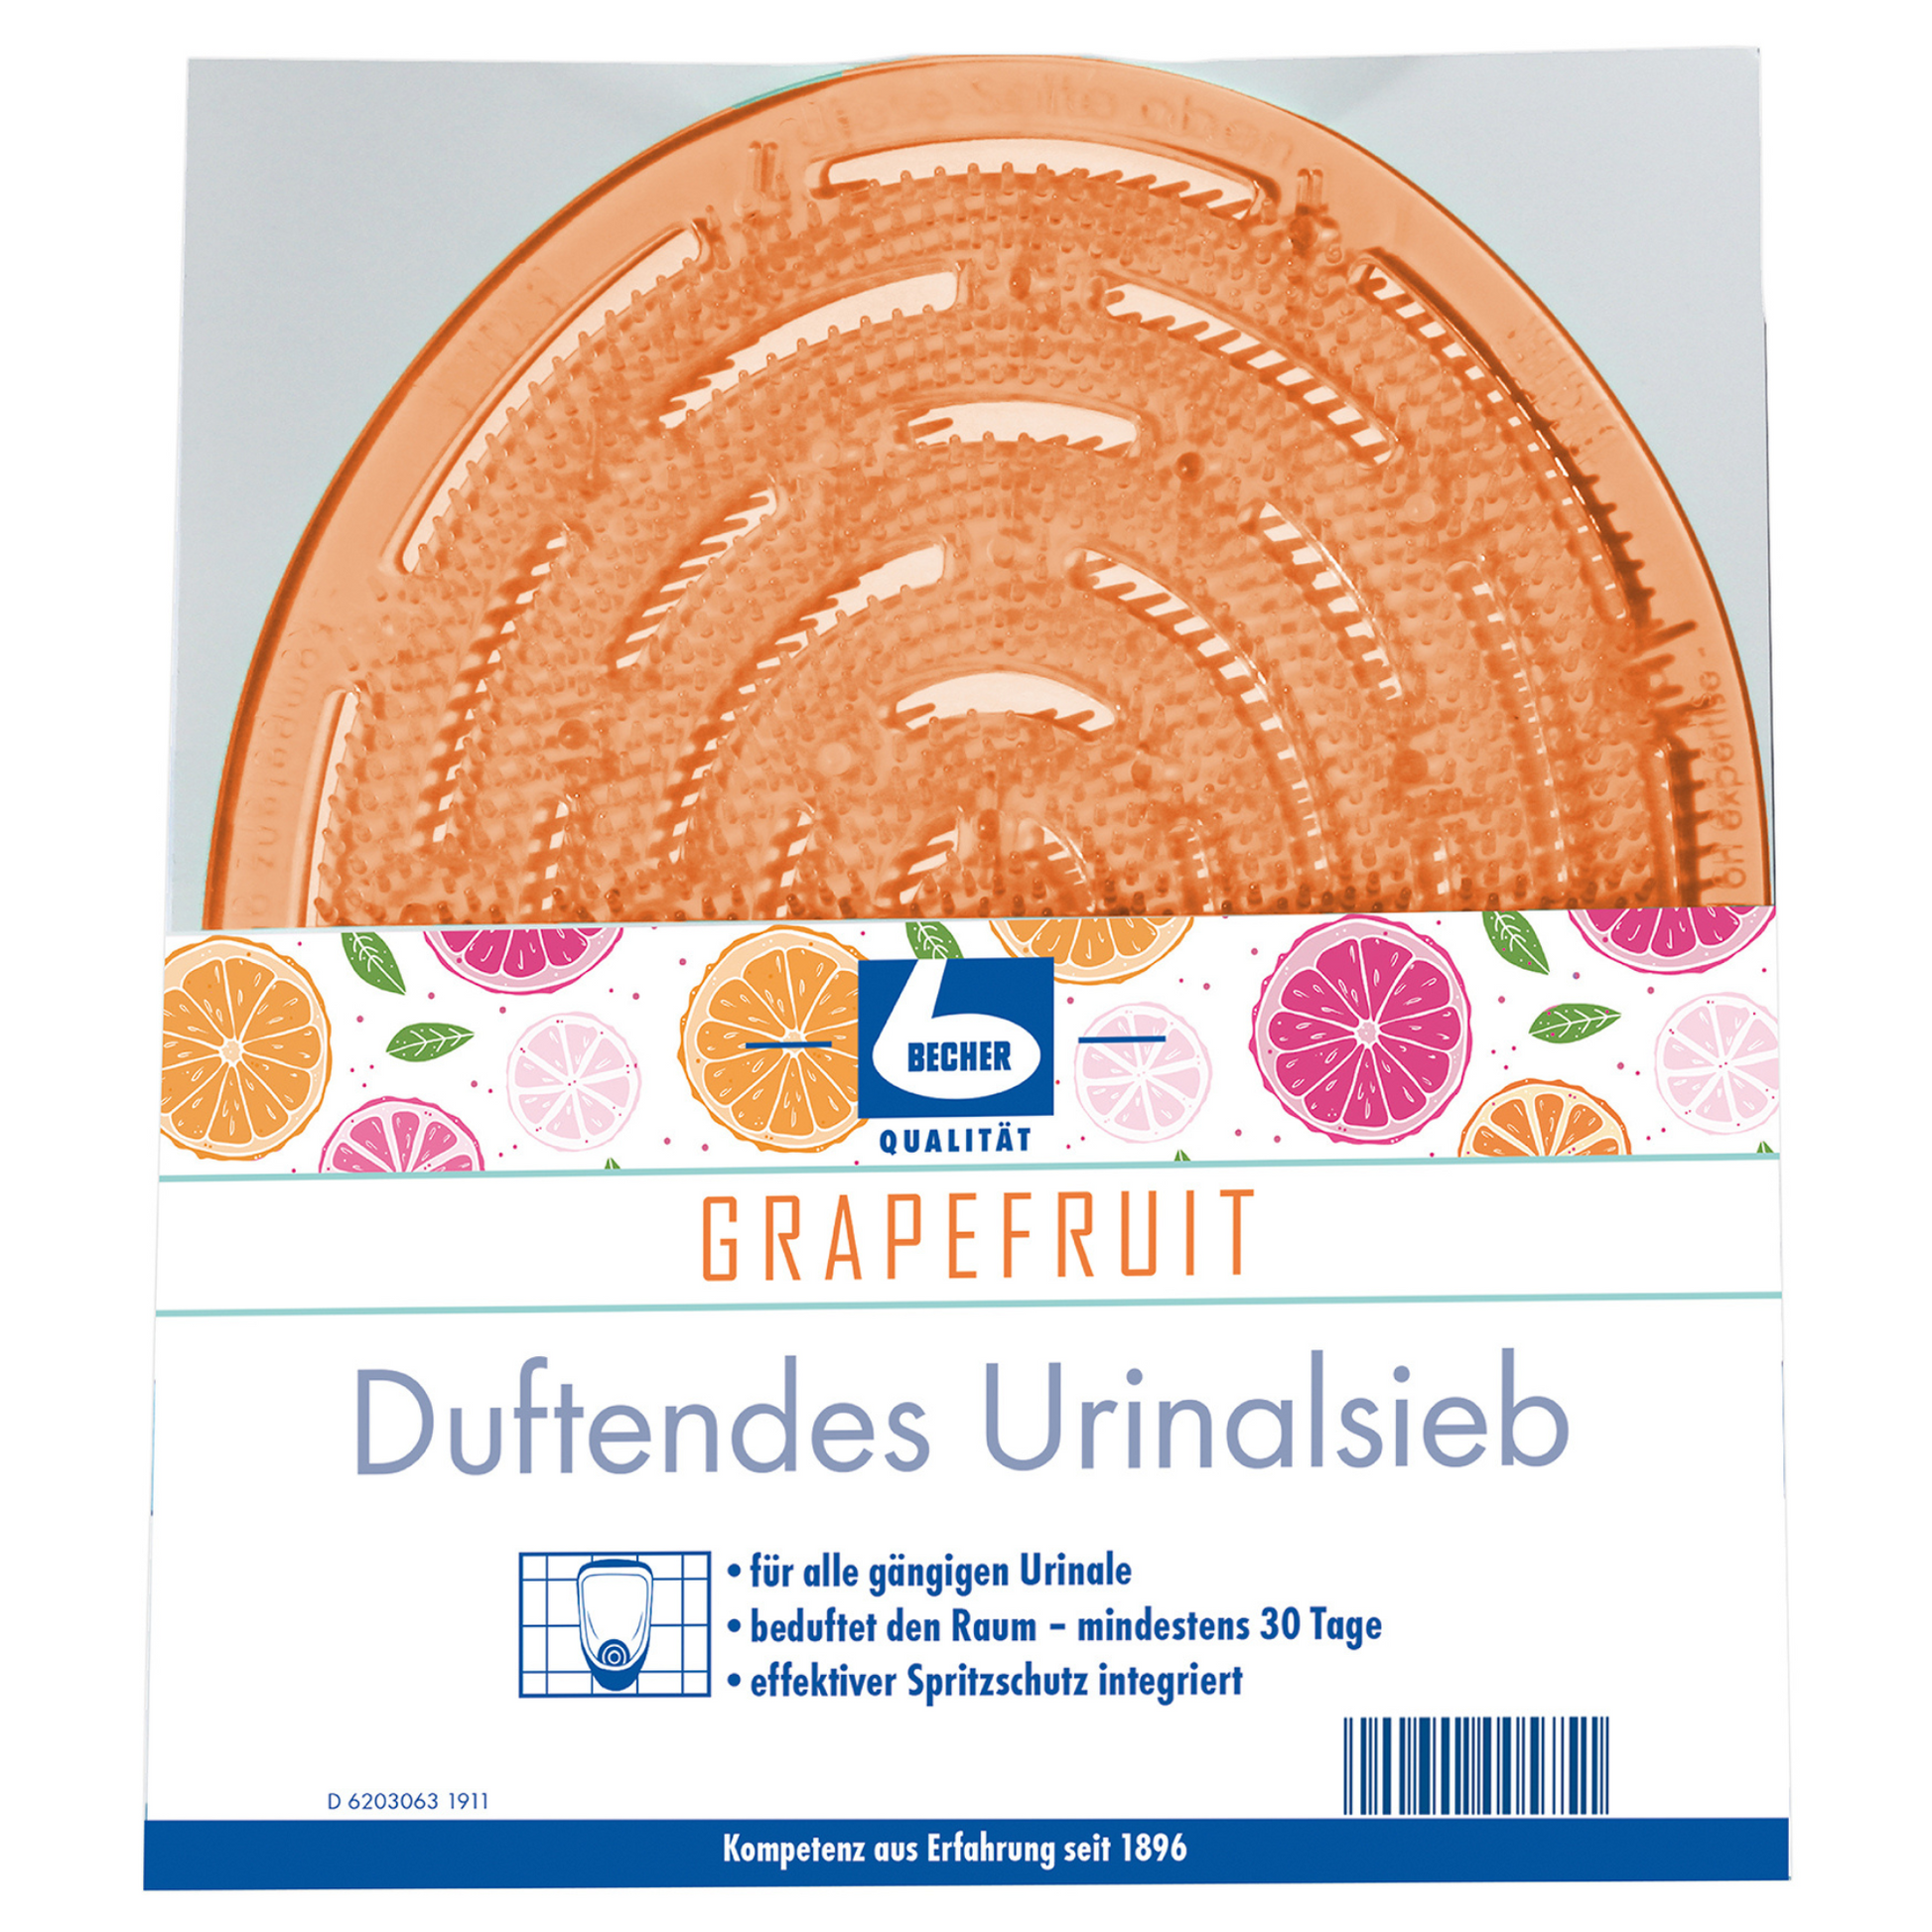 Aromatisches, nach Grapefruit duftendes Urinalsieb von Dr. Becher GmbH mit einer orangefarbenen, runden Matte, die durch eine transparente Vorderseite sichtbar ist. Das Etikett enthält Fruchtillustrationen und einen deutschen Text, der beschreibt